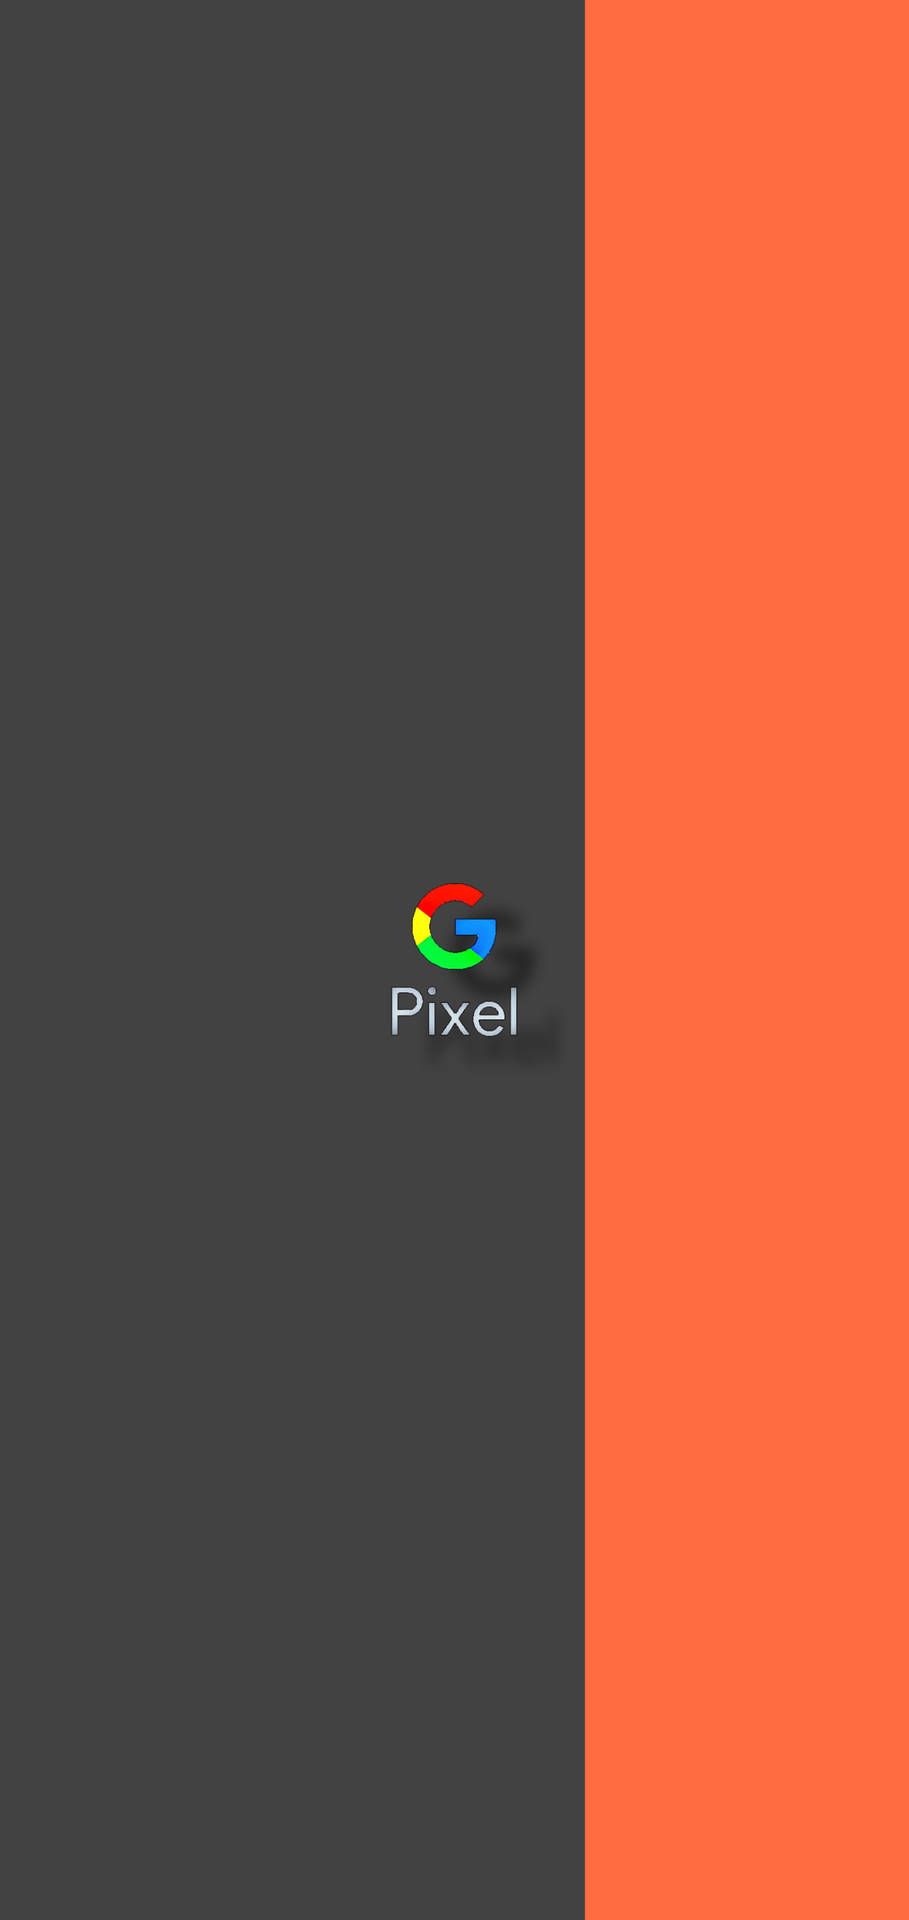 Bộ sưu tập hình nền google pixel Cực Chất Full 4K với hơn 999+ tùy chọn